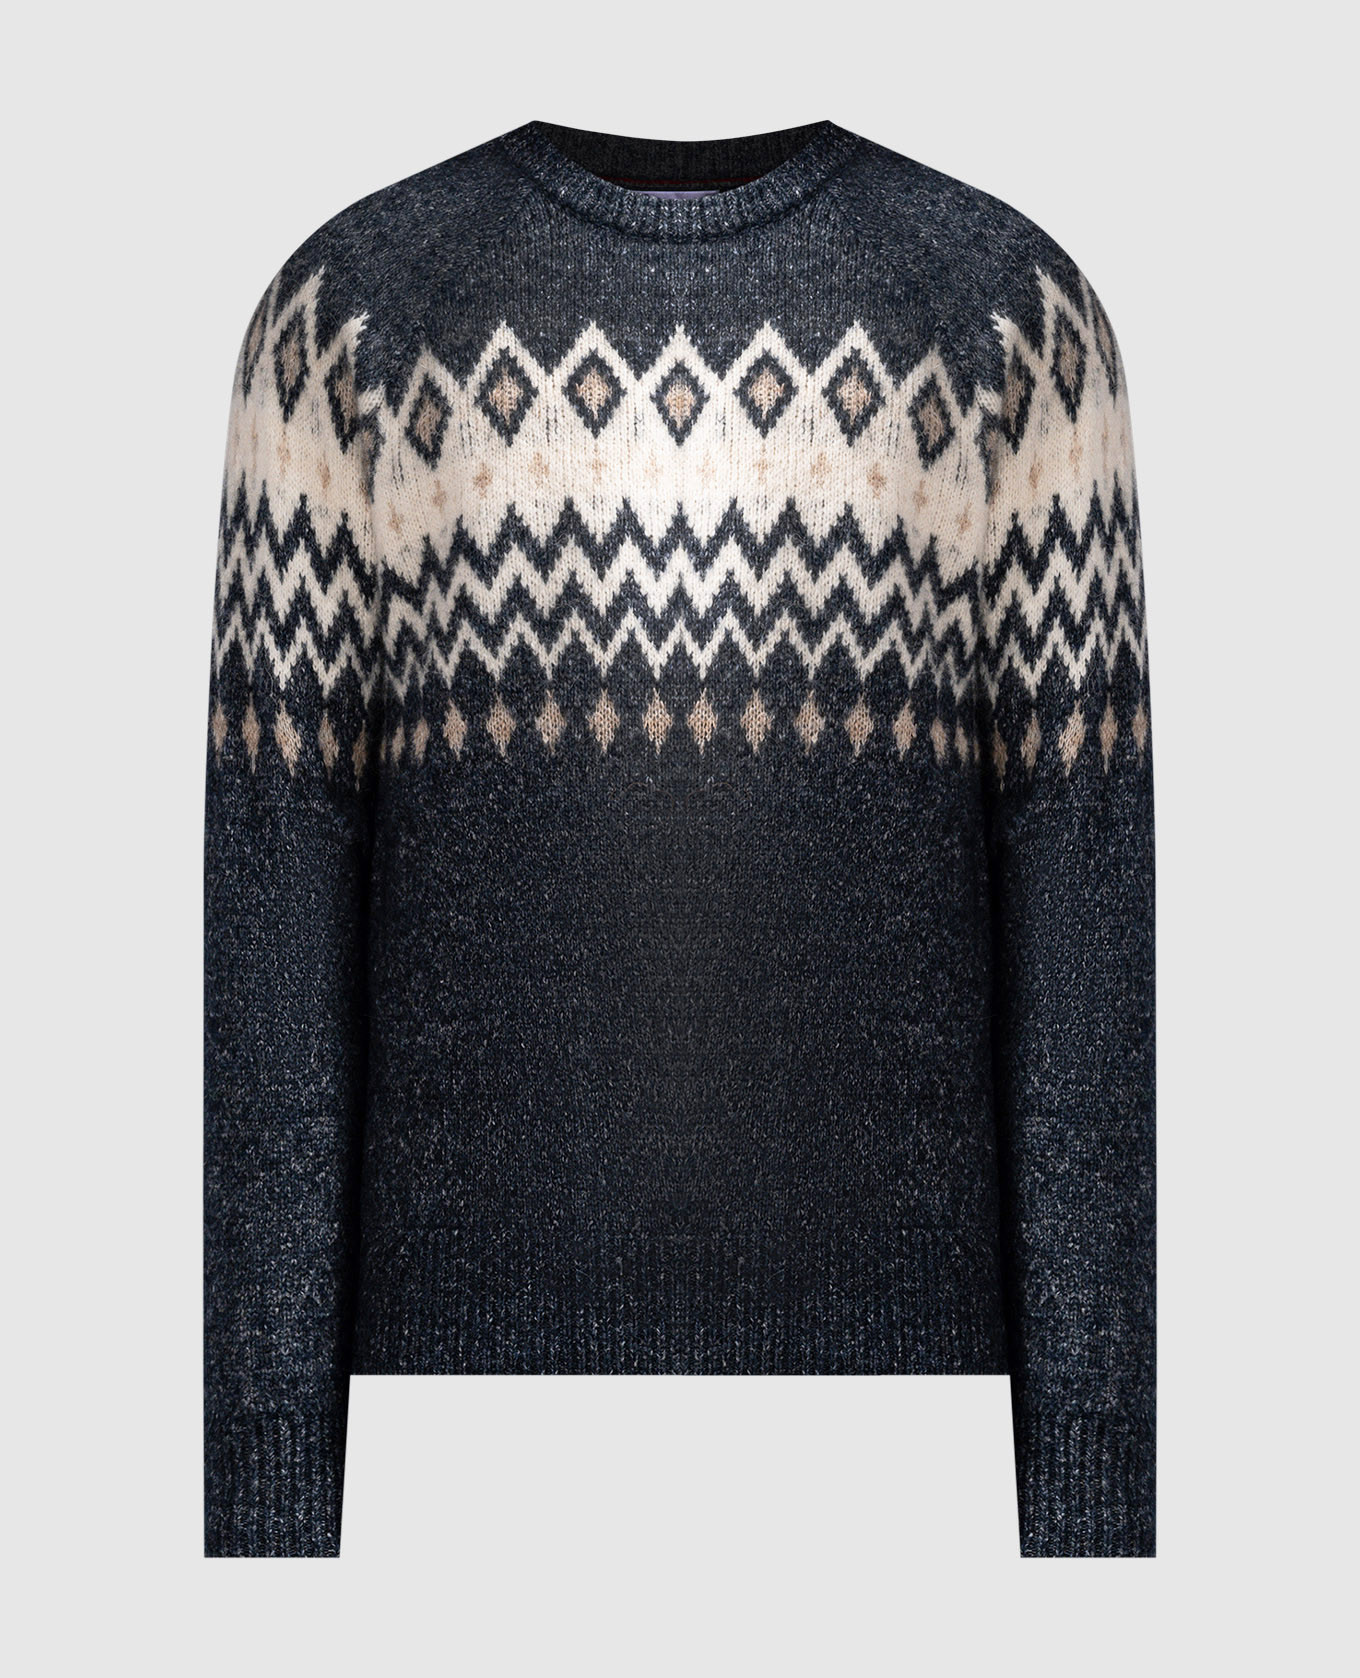 Blue melange patterned sweater